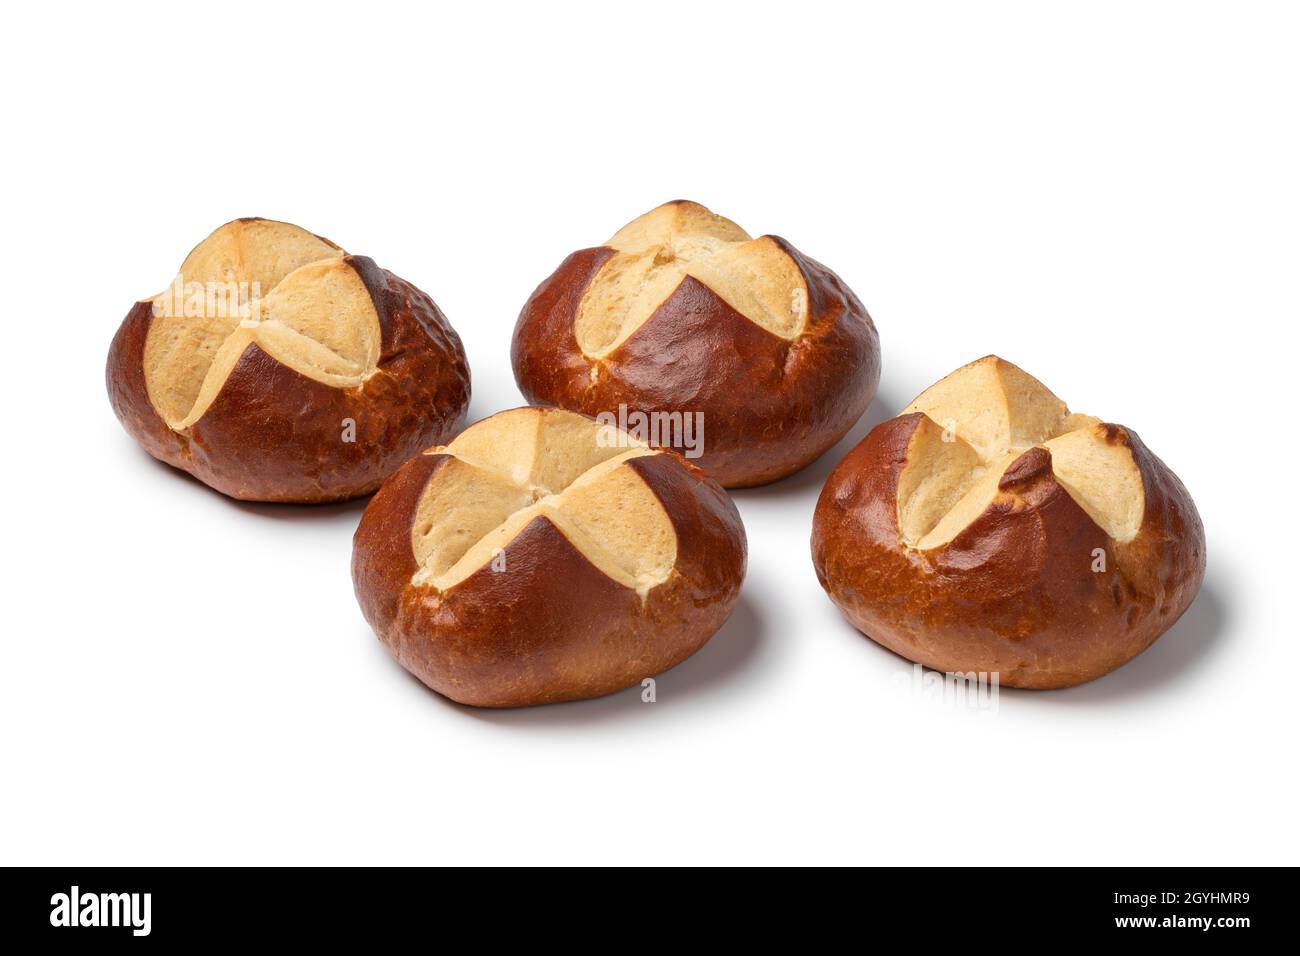 Fresh baked German Lye rolls isolated on white background Stock Photo